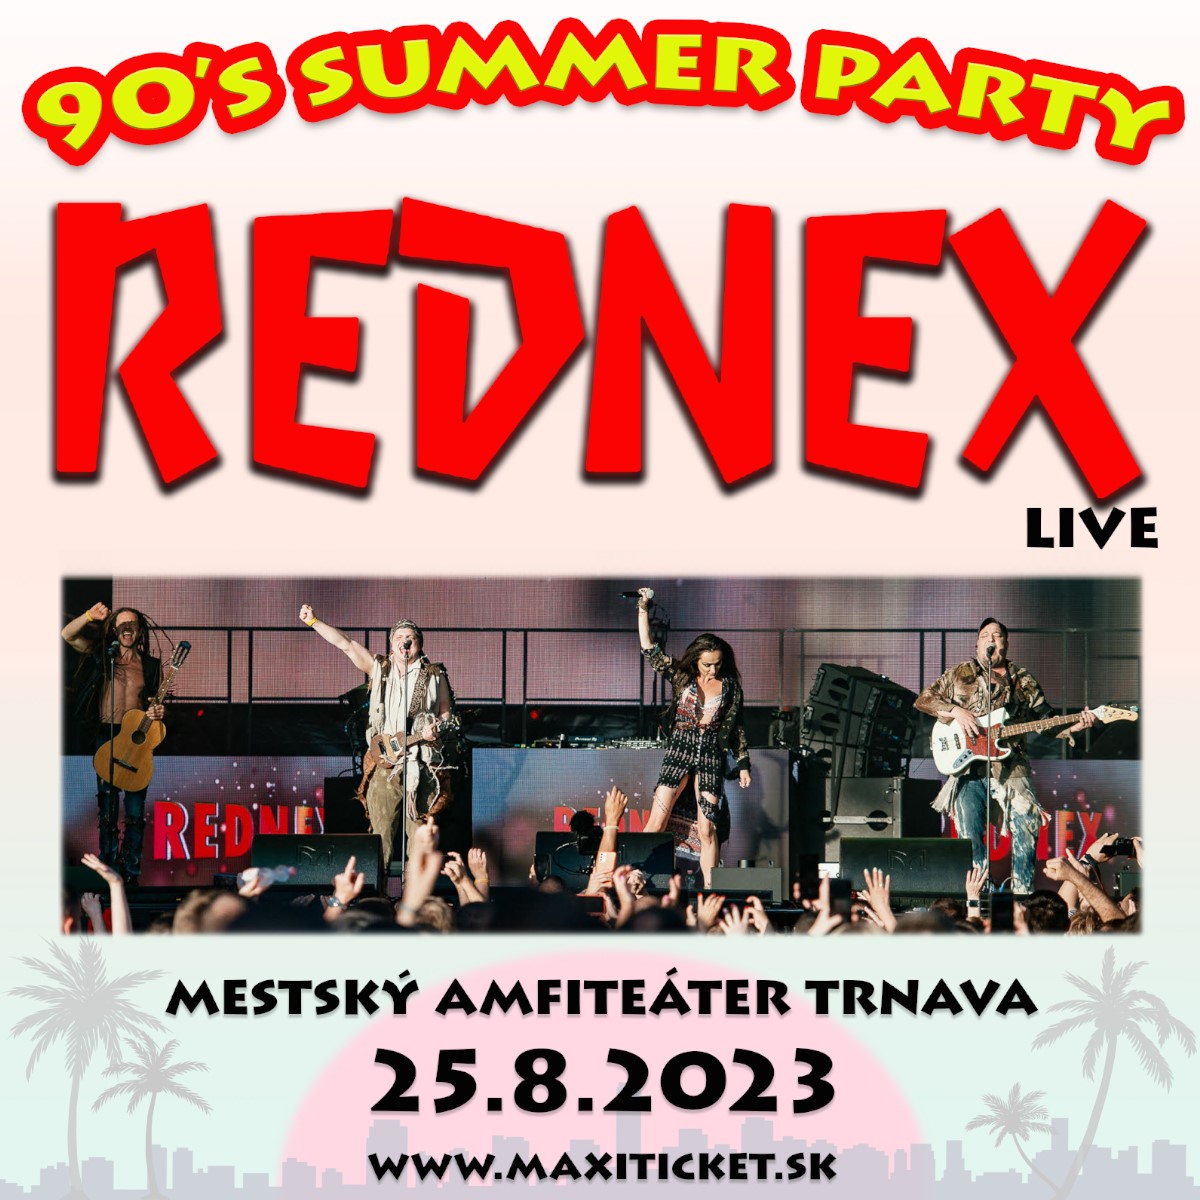 Rednex live concert - 90’s summer party - Trnava - AMFIK